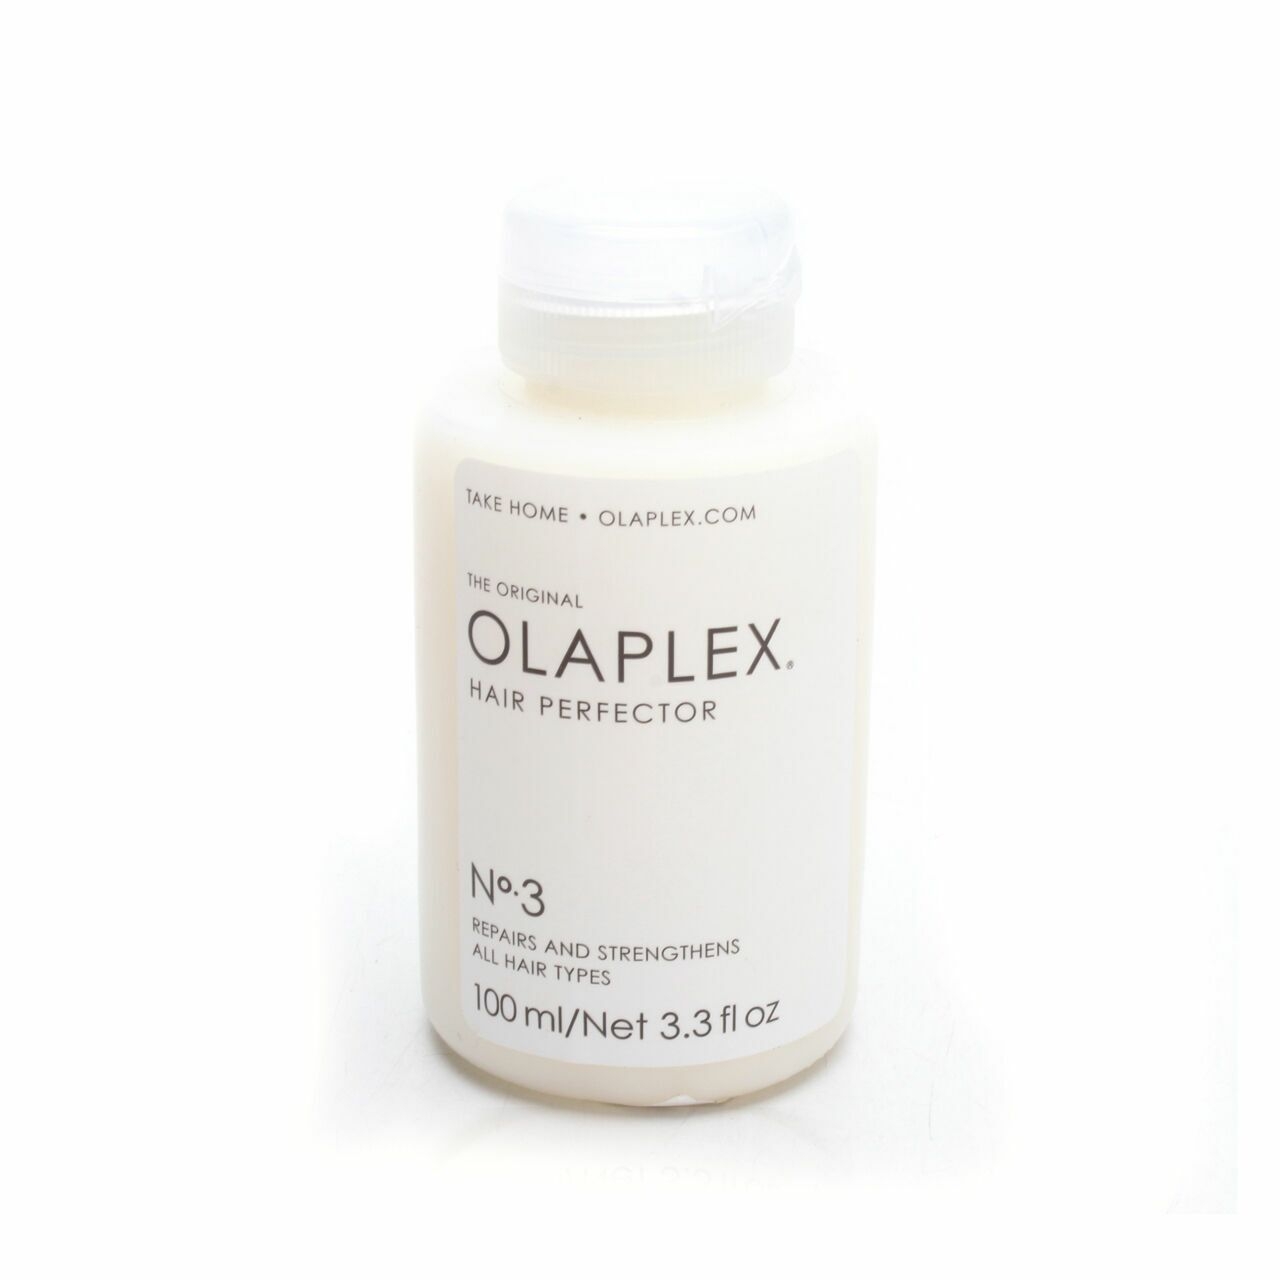 Olaplex. Hair Perfector No.3 Hair Care